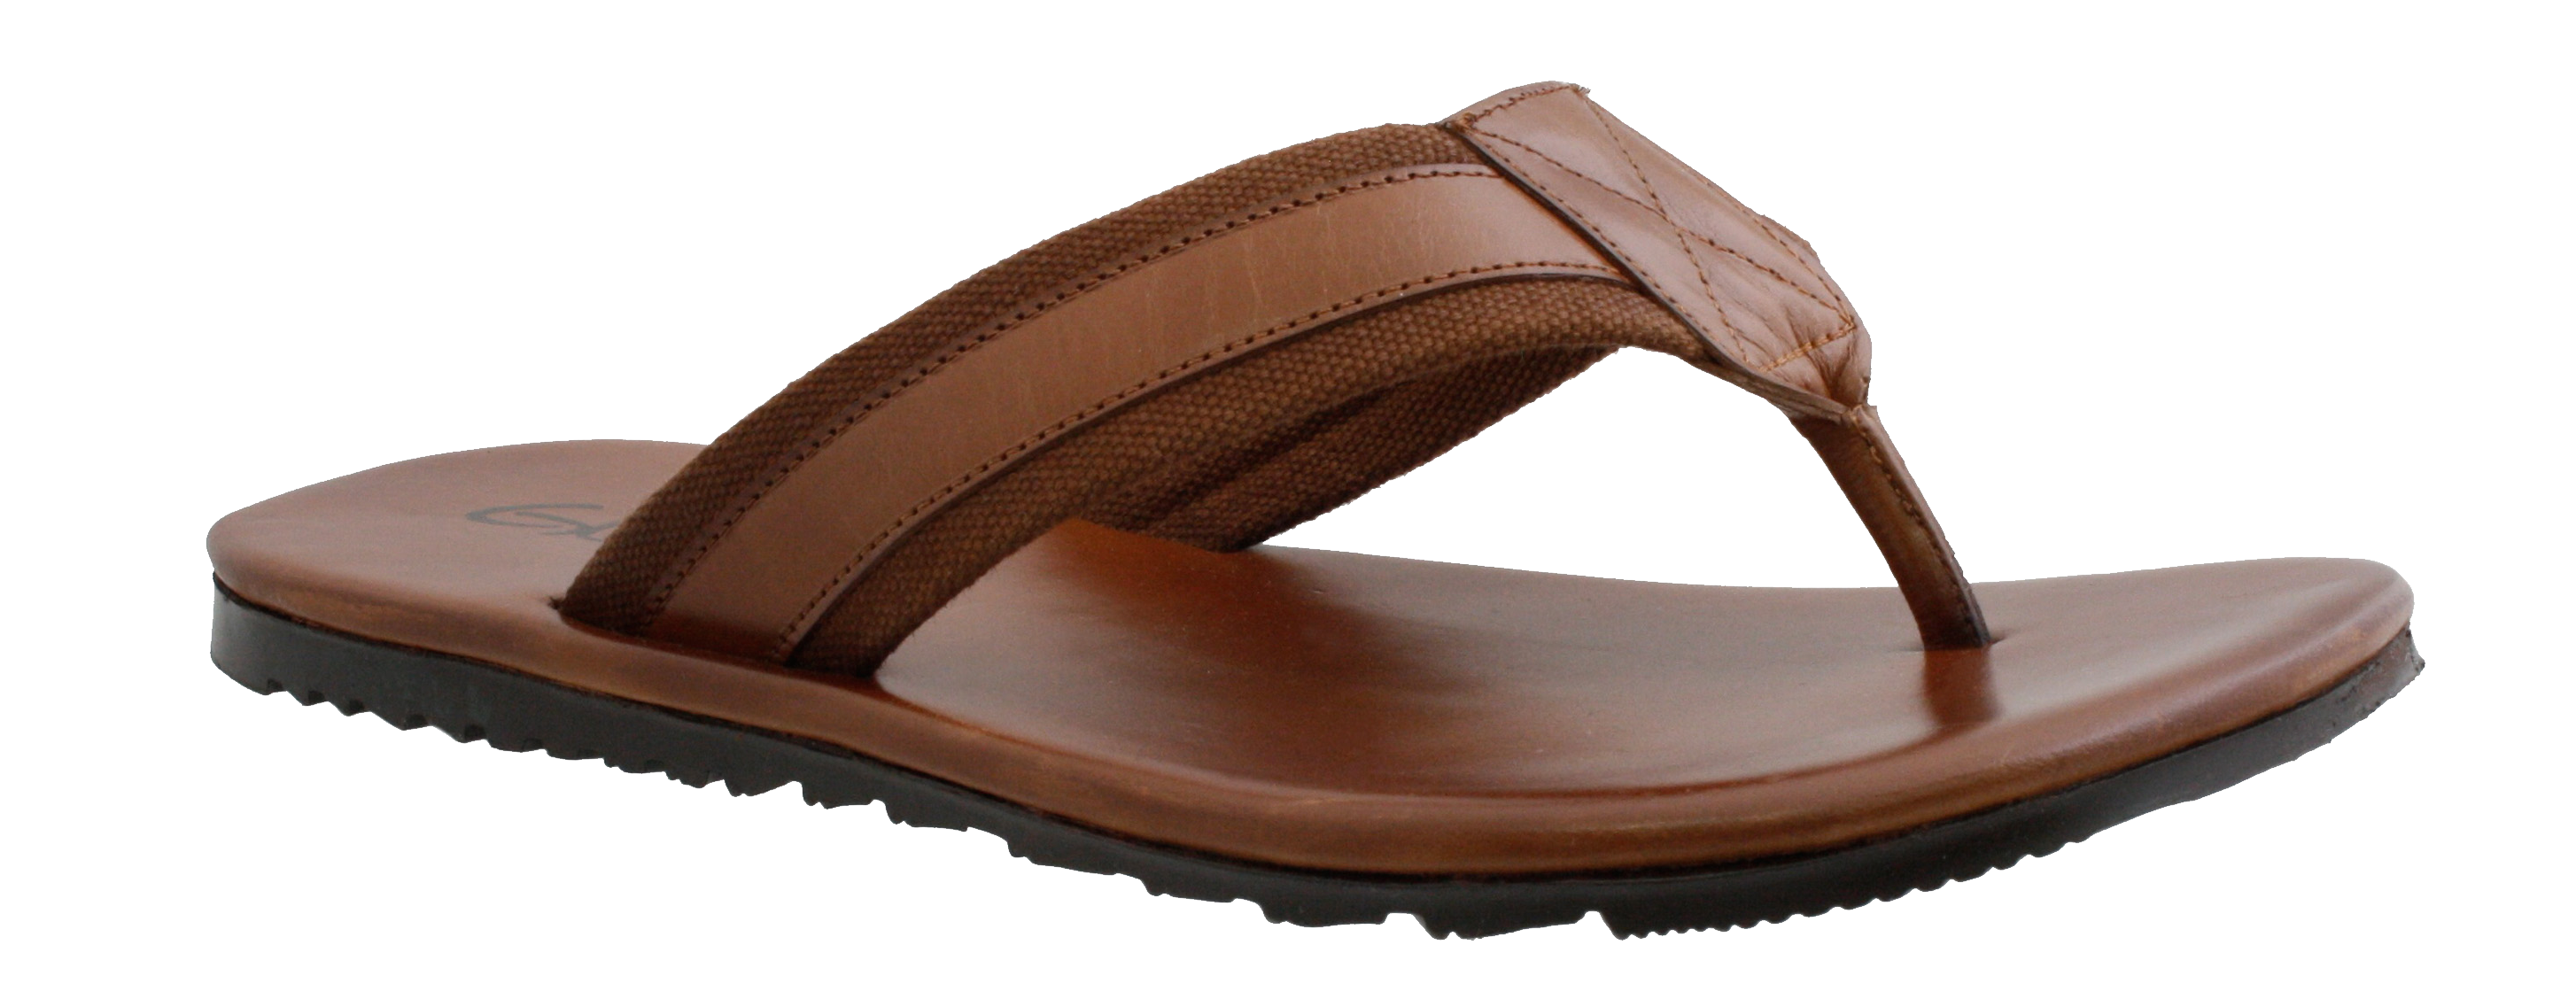 Sandal PNG in Transparent - Sandal Png